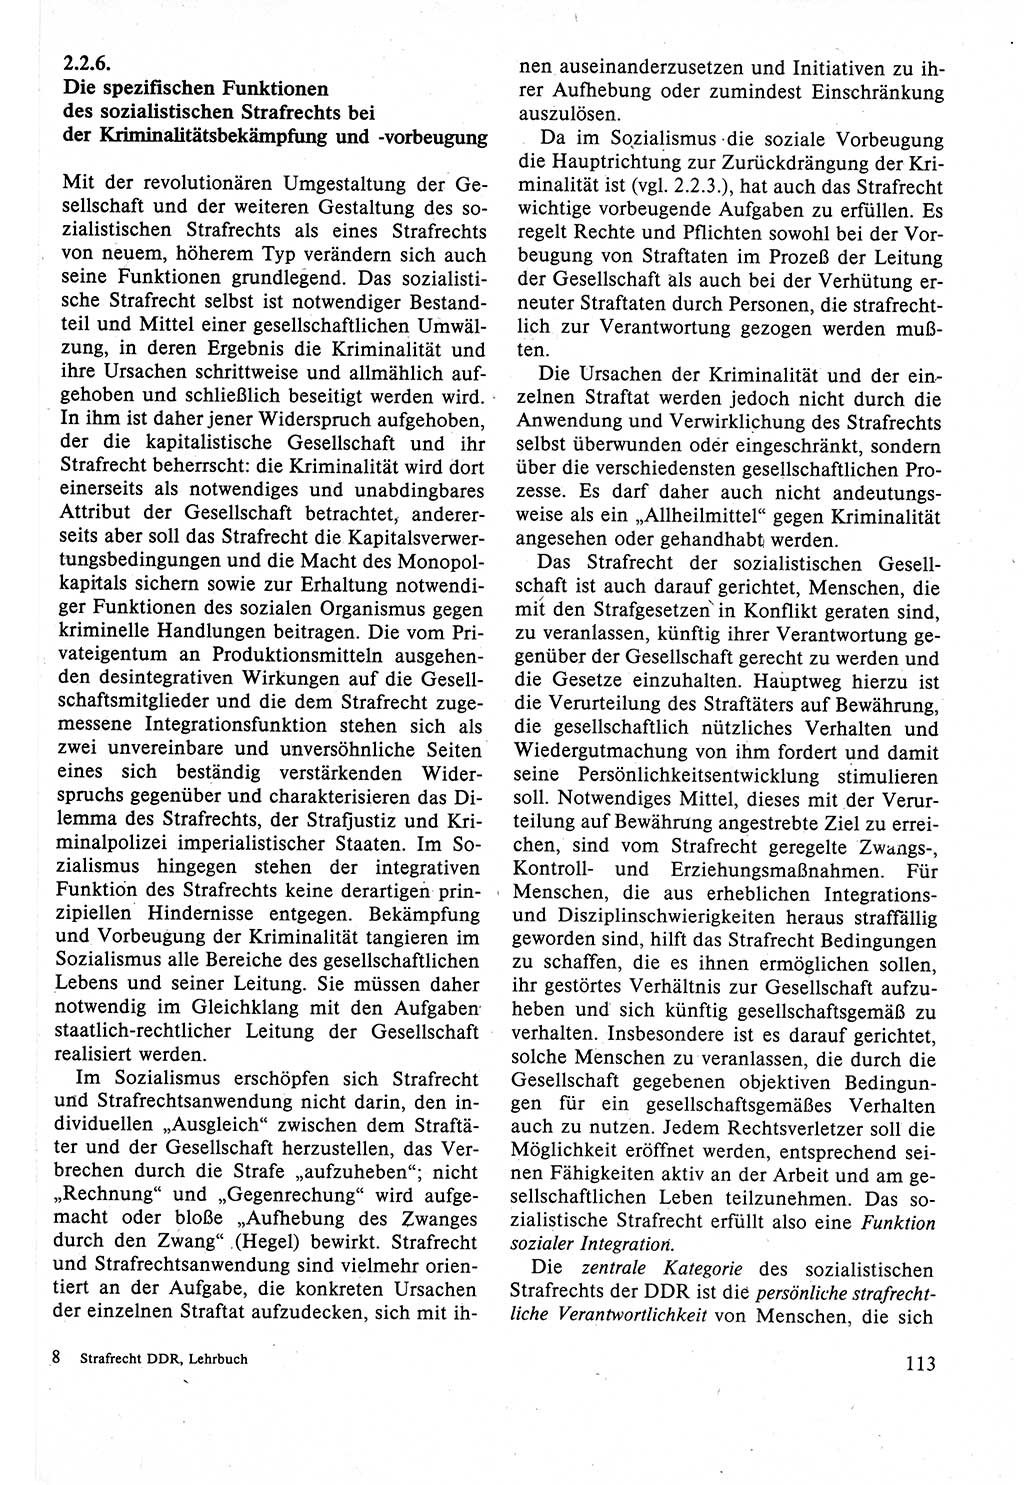 Strafrecht der DDR (Deutsche Demokratische Republik), Lehrbuch 1988, Seite 113 (Strafr. DDR Lb. 1988, S. 113)